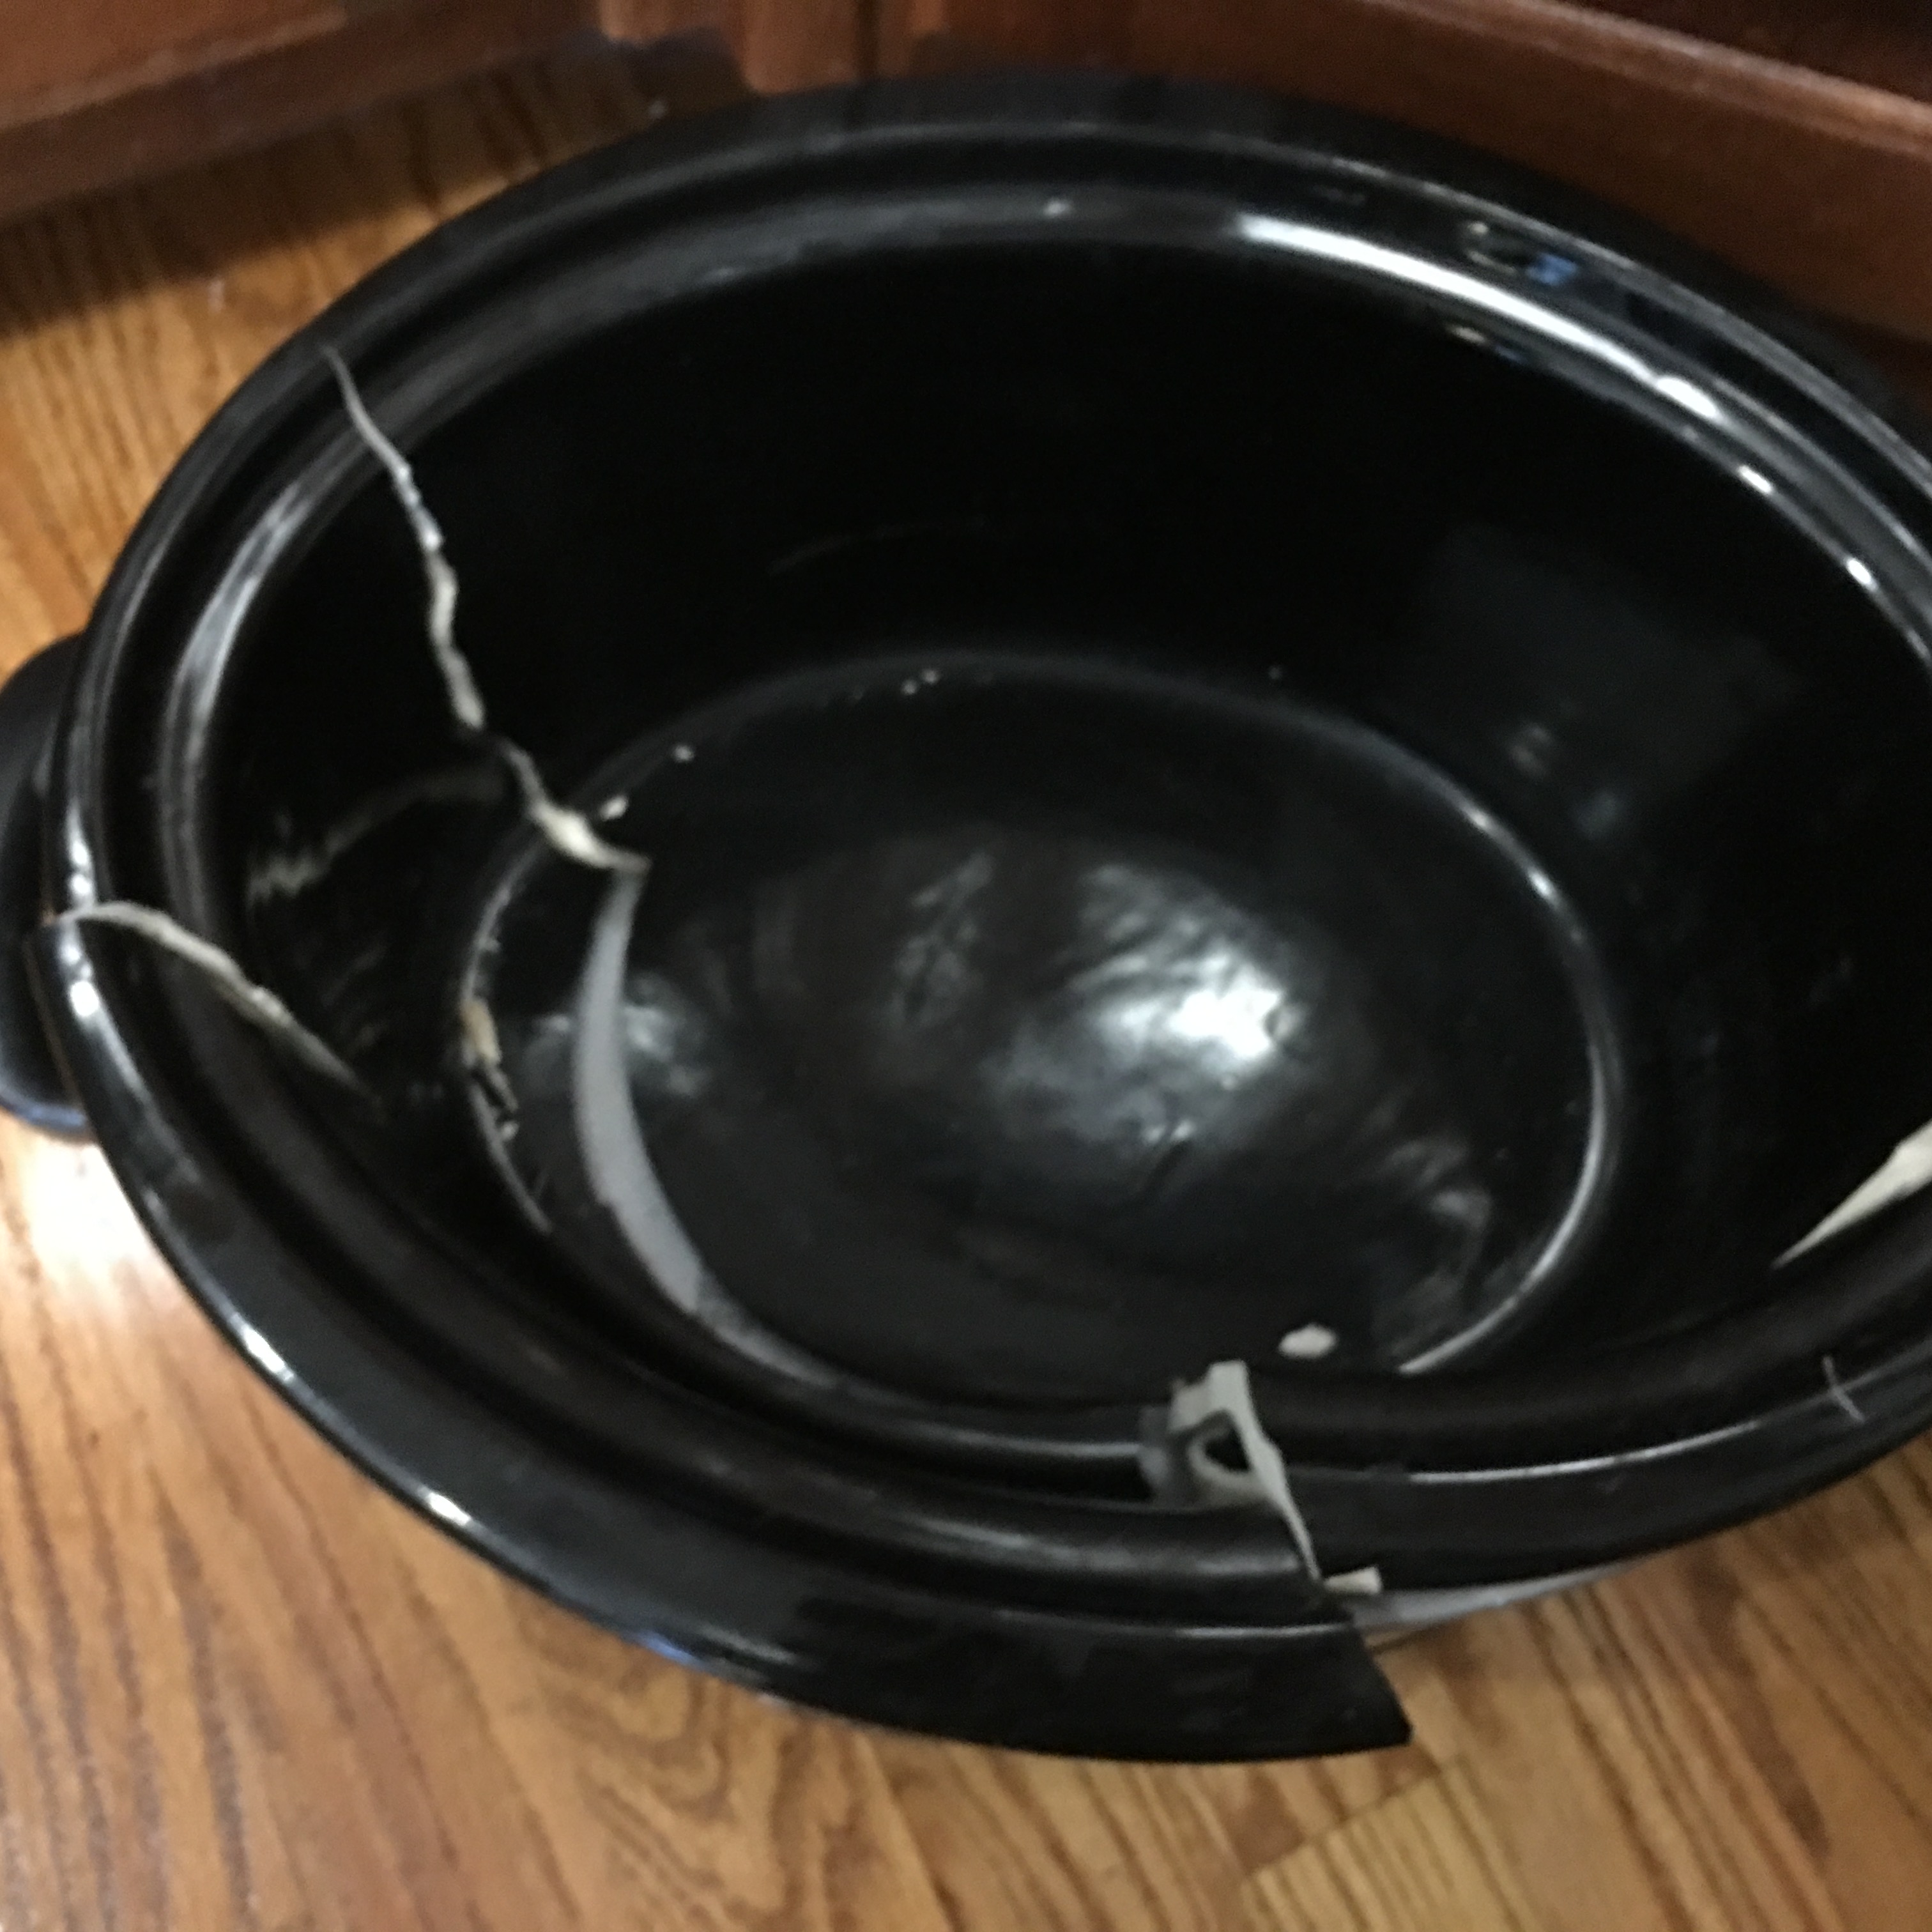 Another Broken Crock Pot? – Kids, Coupons, and Krafts